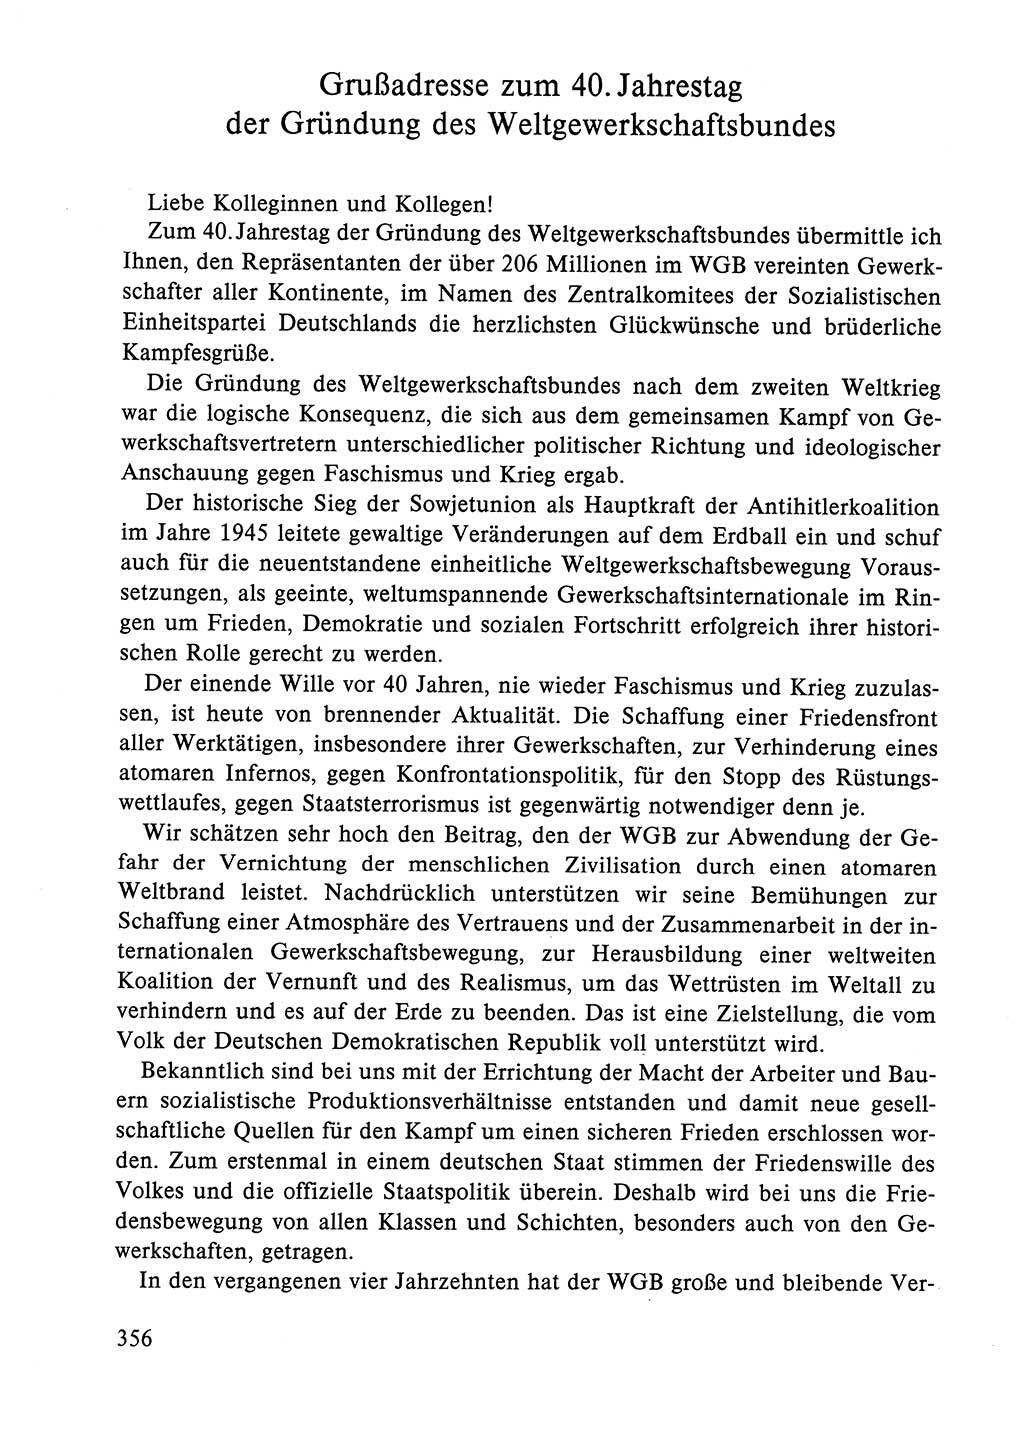 Dokumente der Sozialistischen Einheitspartei Deutschlands (SED) [Deutsche Demokratische Republik (DDR)] 1984-1985, Seite 356 (Dok. SED DDR 1984-1985, S. 356)